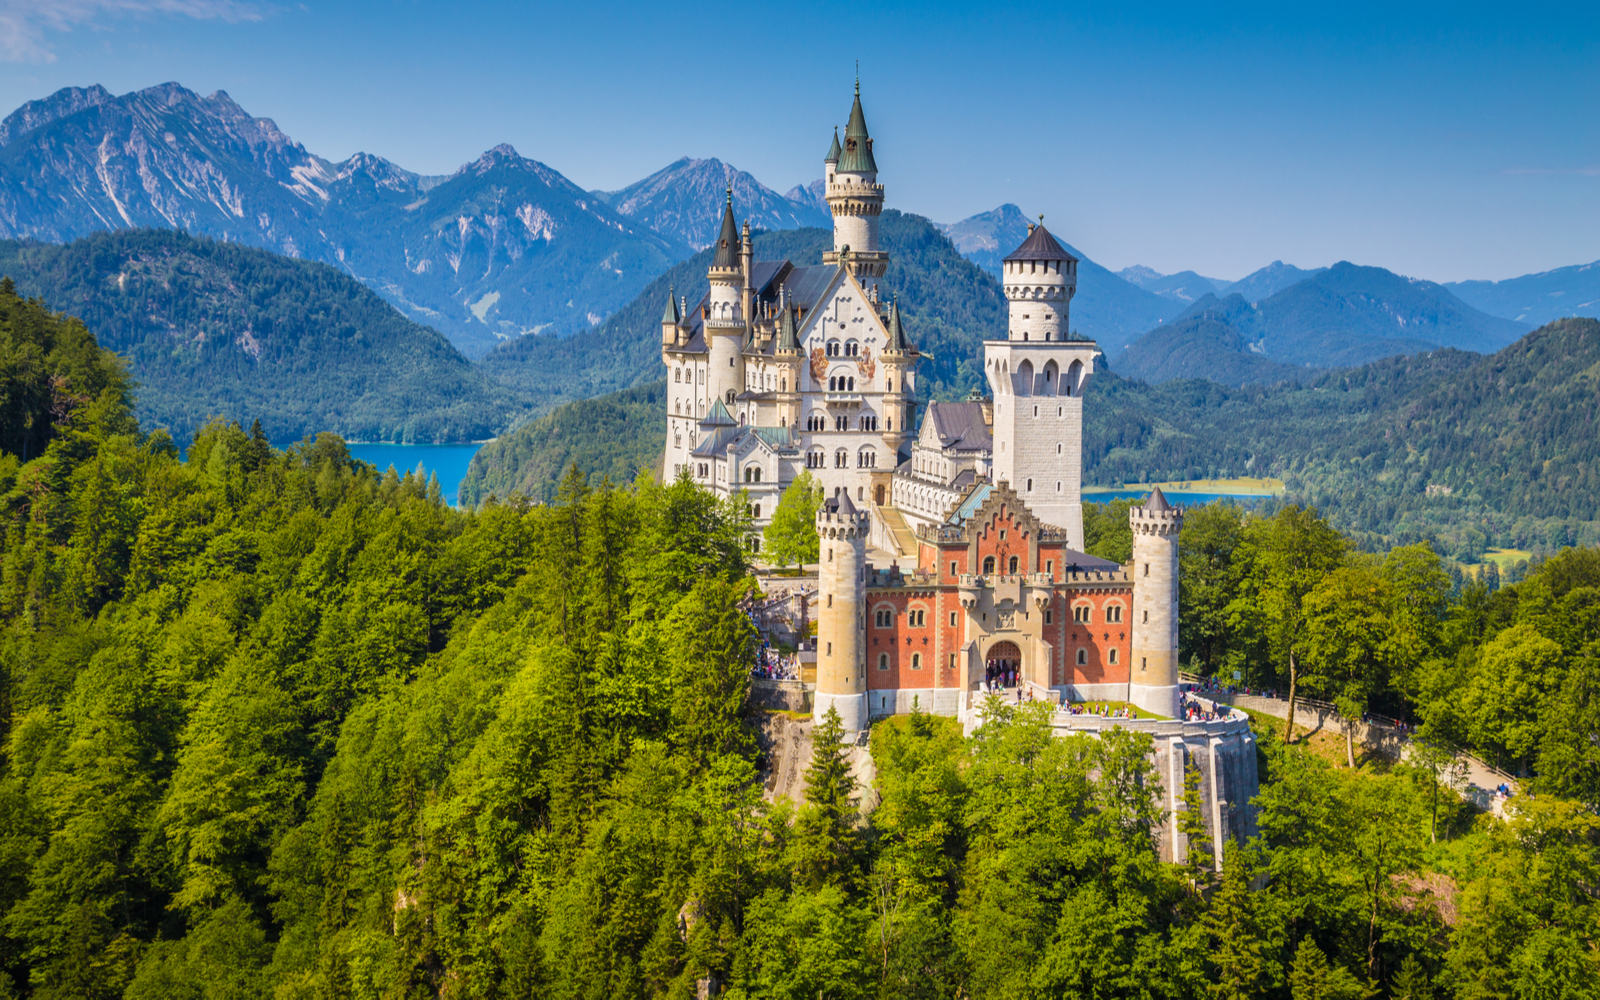 15 Best Castles in Germany in 2022